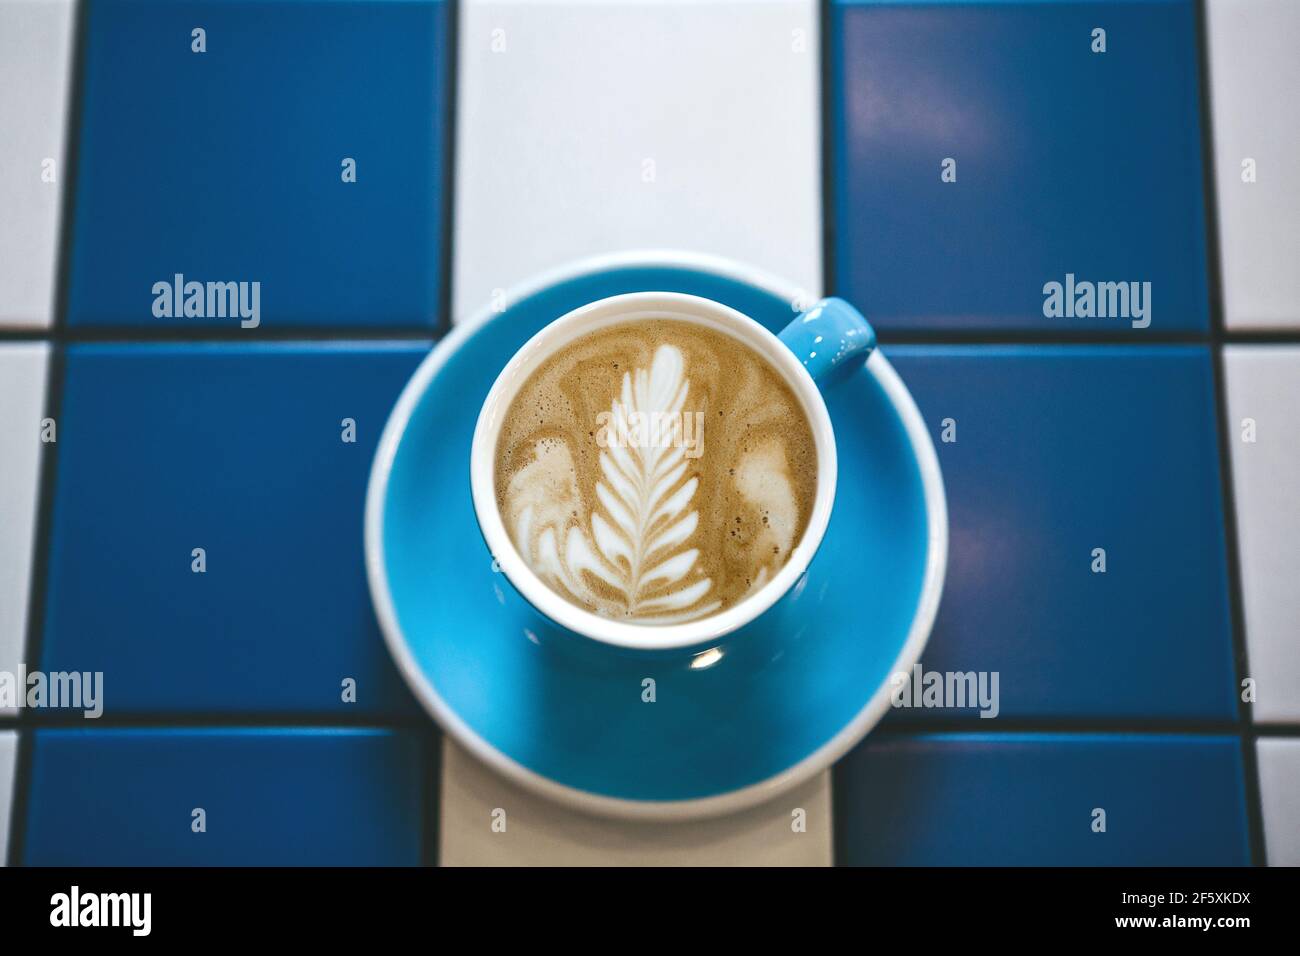 Gros plan de café cappuccino frais et aromatique dans une tasse bleue sur une table de carreaux de céramique bleu et blanc. Banque D'Images